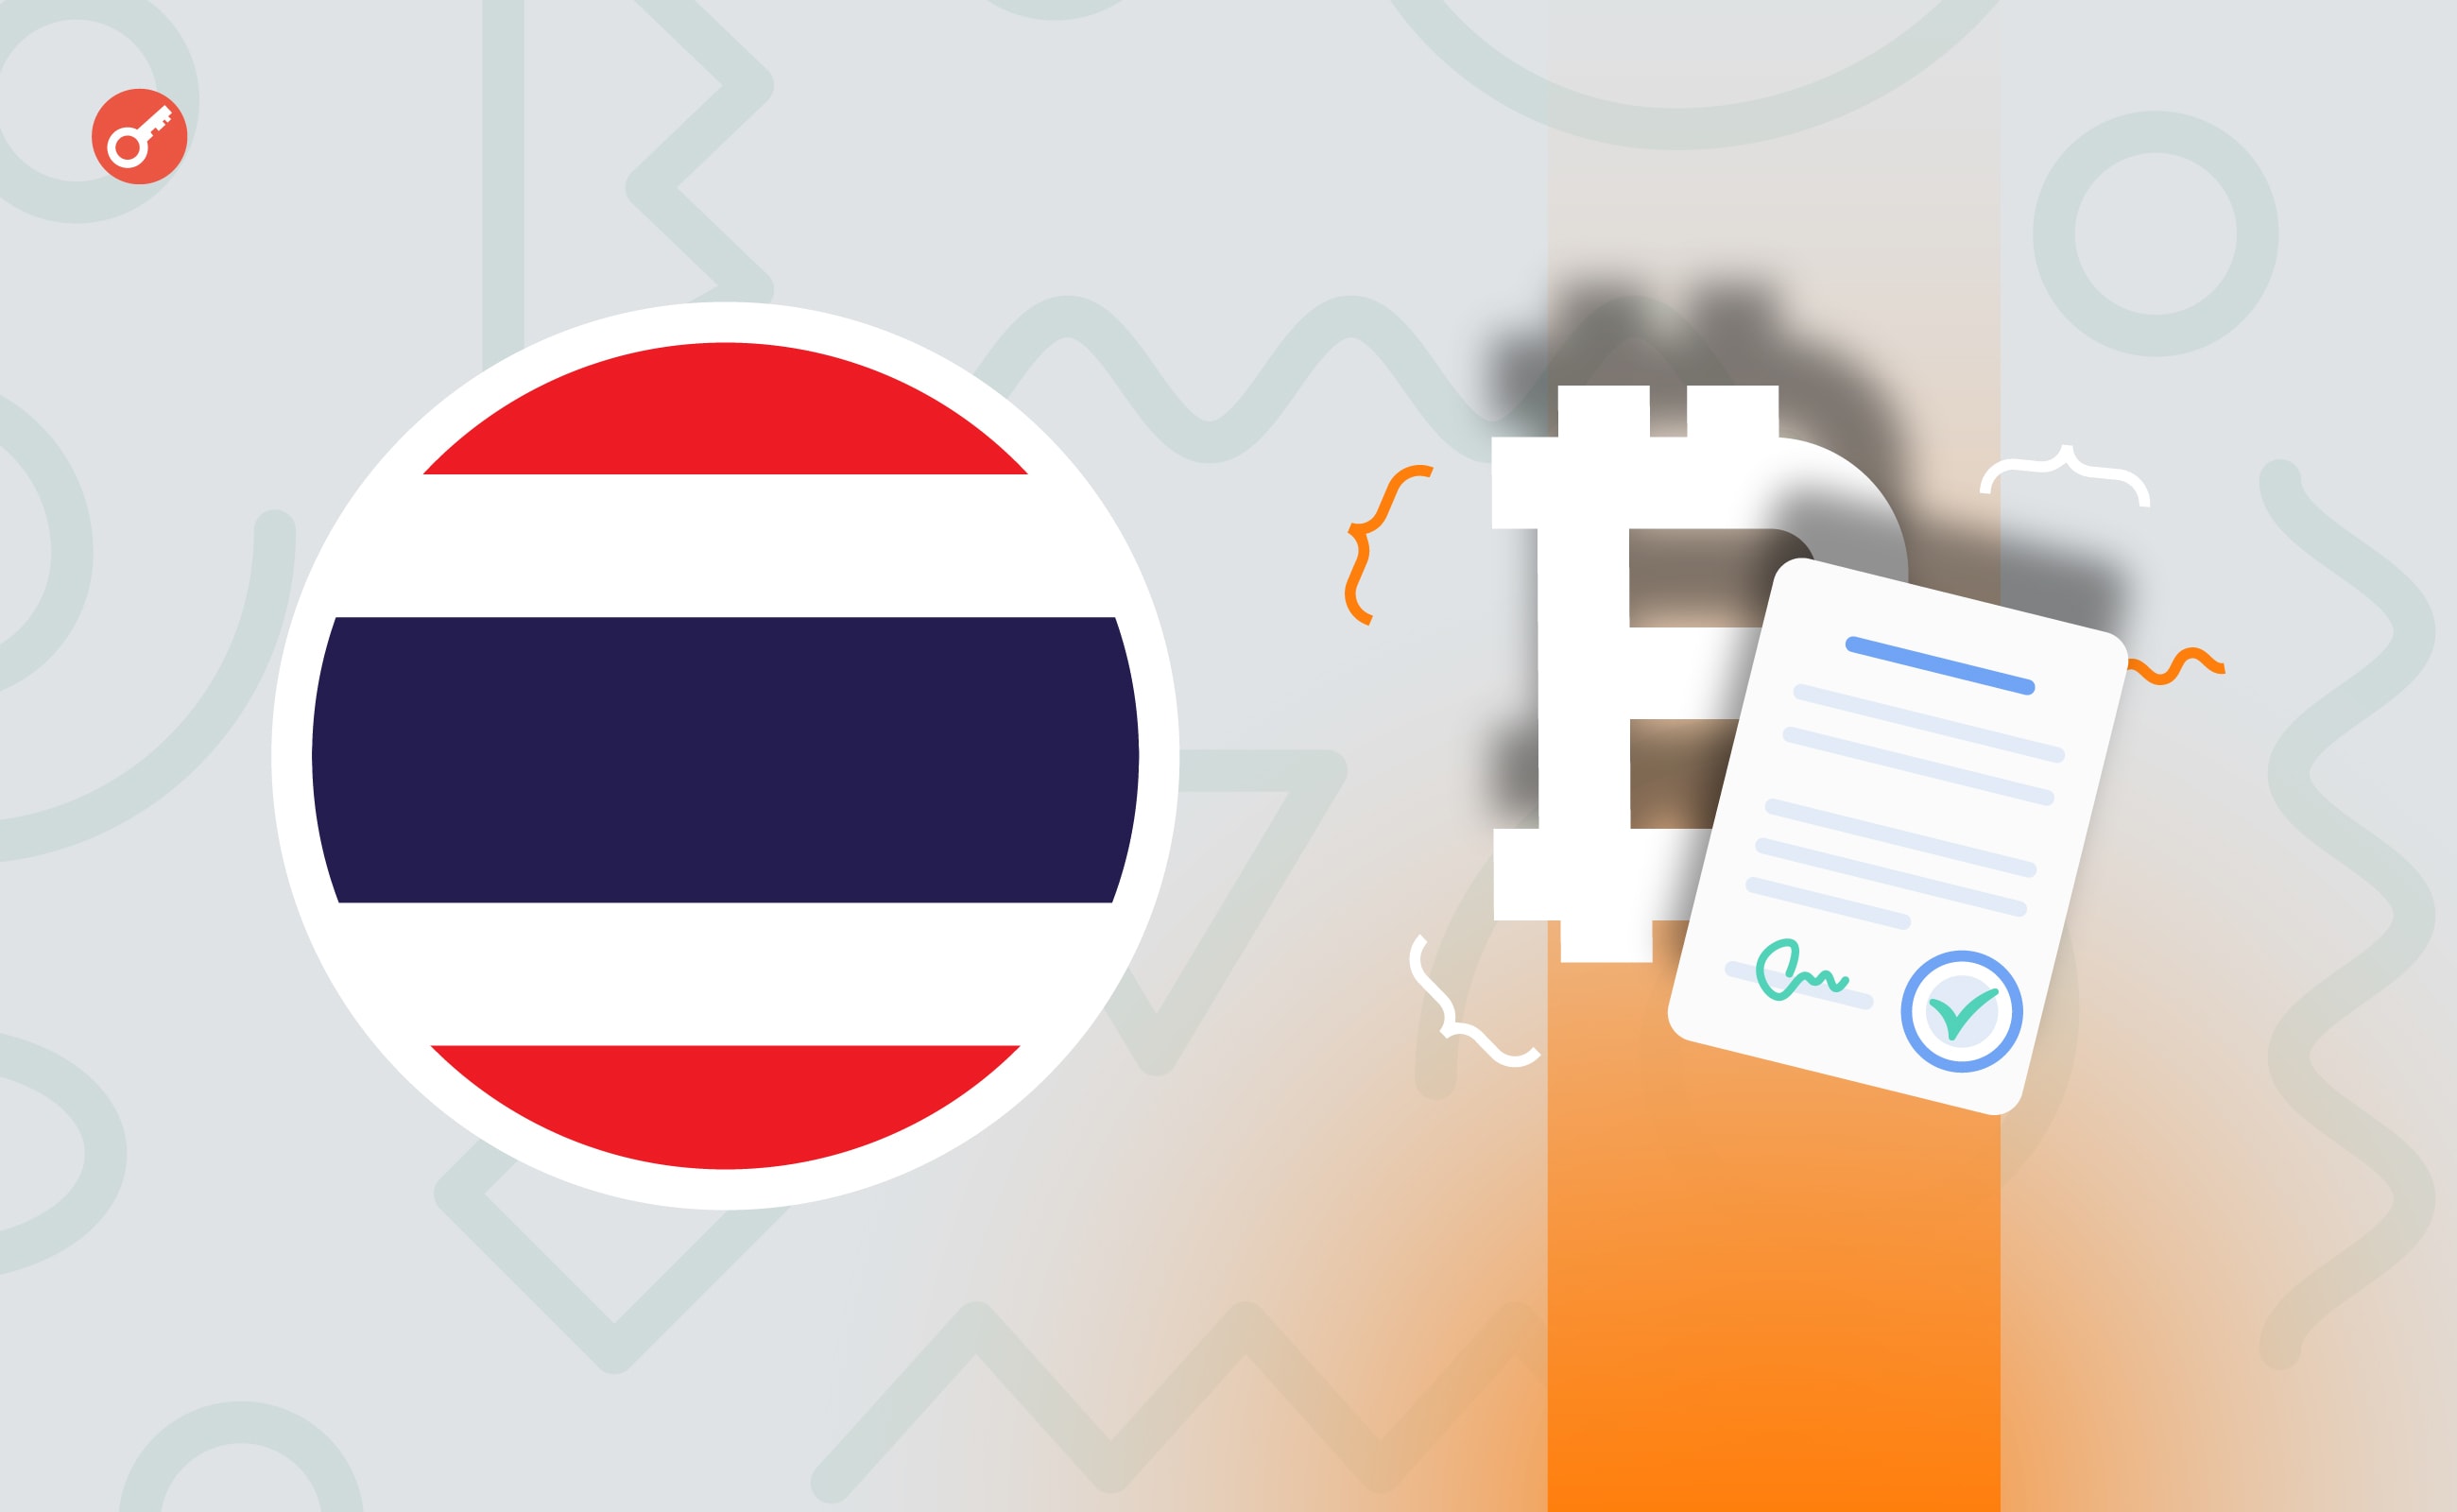 У Таїланді скасували ПДВ для криптовалютних переказів. Головний колаж новини.